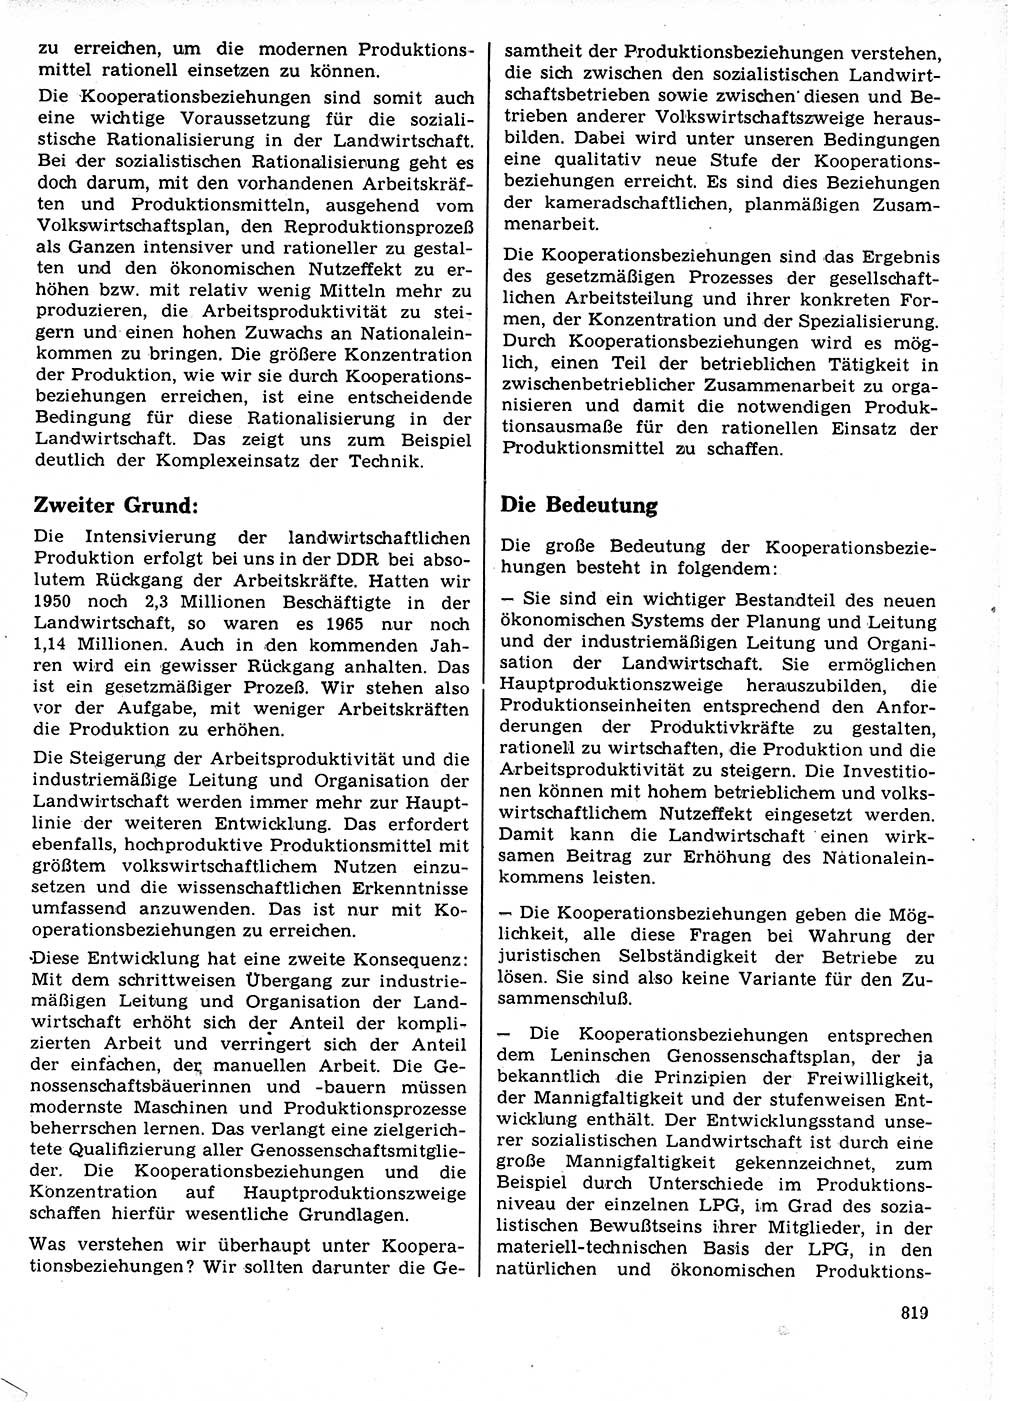 Neuer Weg (NW), Organ des Zentralkomitees (ZK) der SED (Sozialistische Einheitspartei Deutschlands) fÃ¼r Fragen des Parteilebens, 21. Jahrgang [Deutsche Demokratische Republik (DDR)] 1966, Seite 819 (NW ZK SED DDR 1966, S. 819)